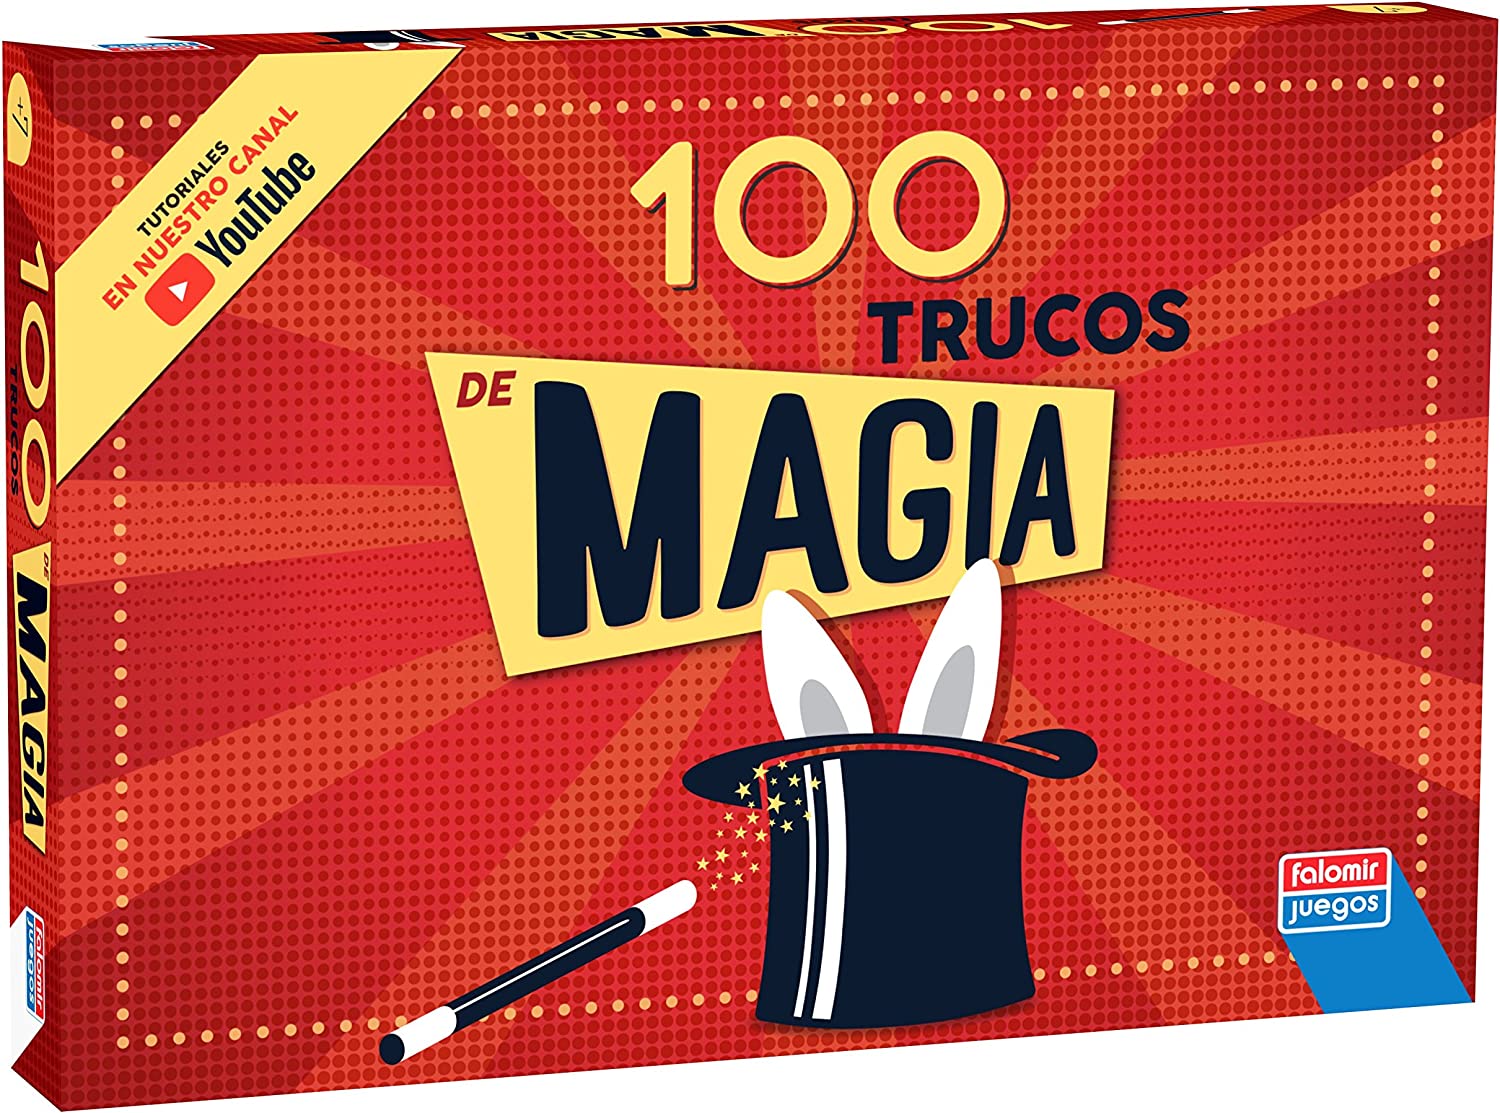 CAJA MAGIA 100 TRUCOS 1060 - V4321